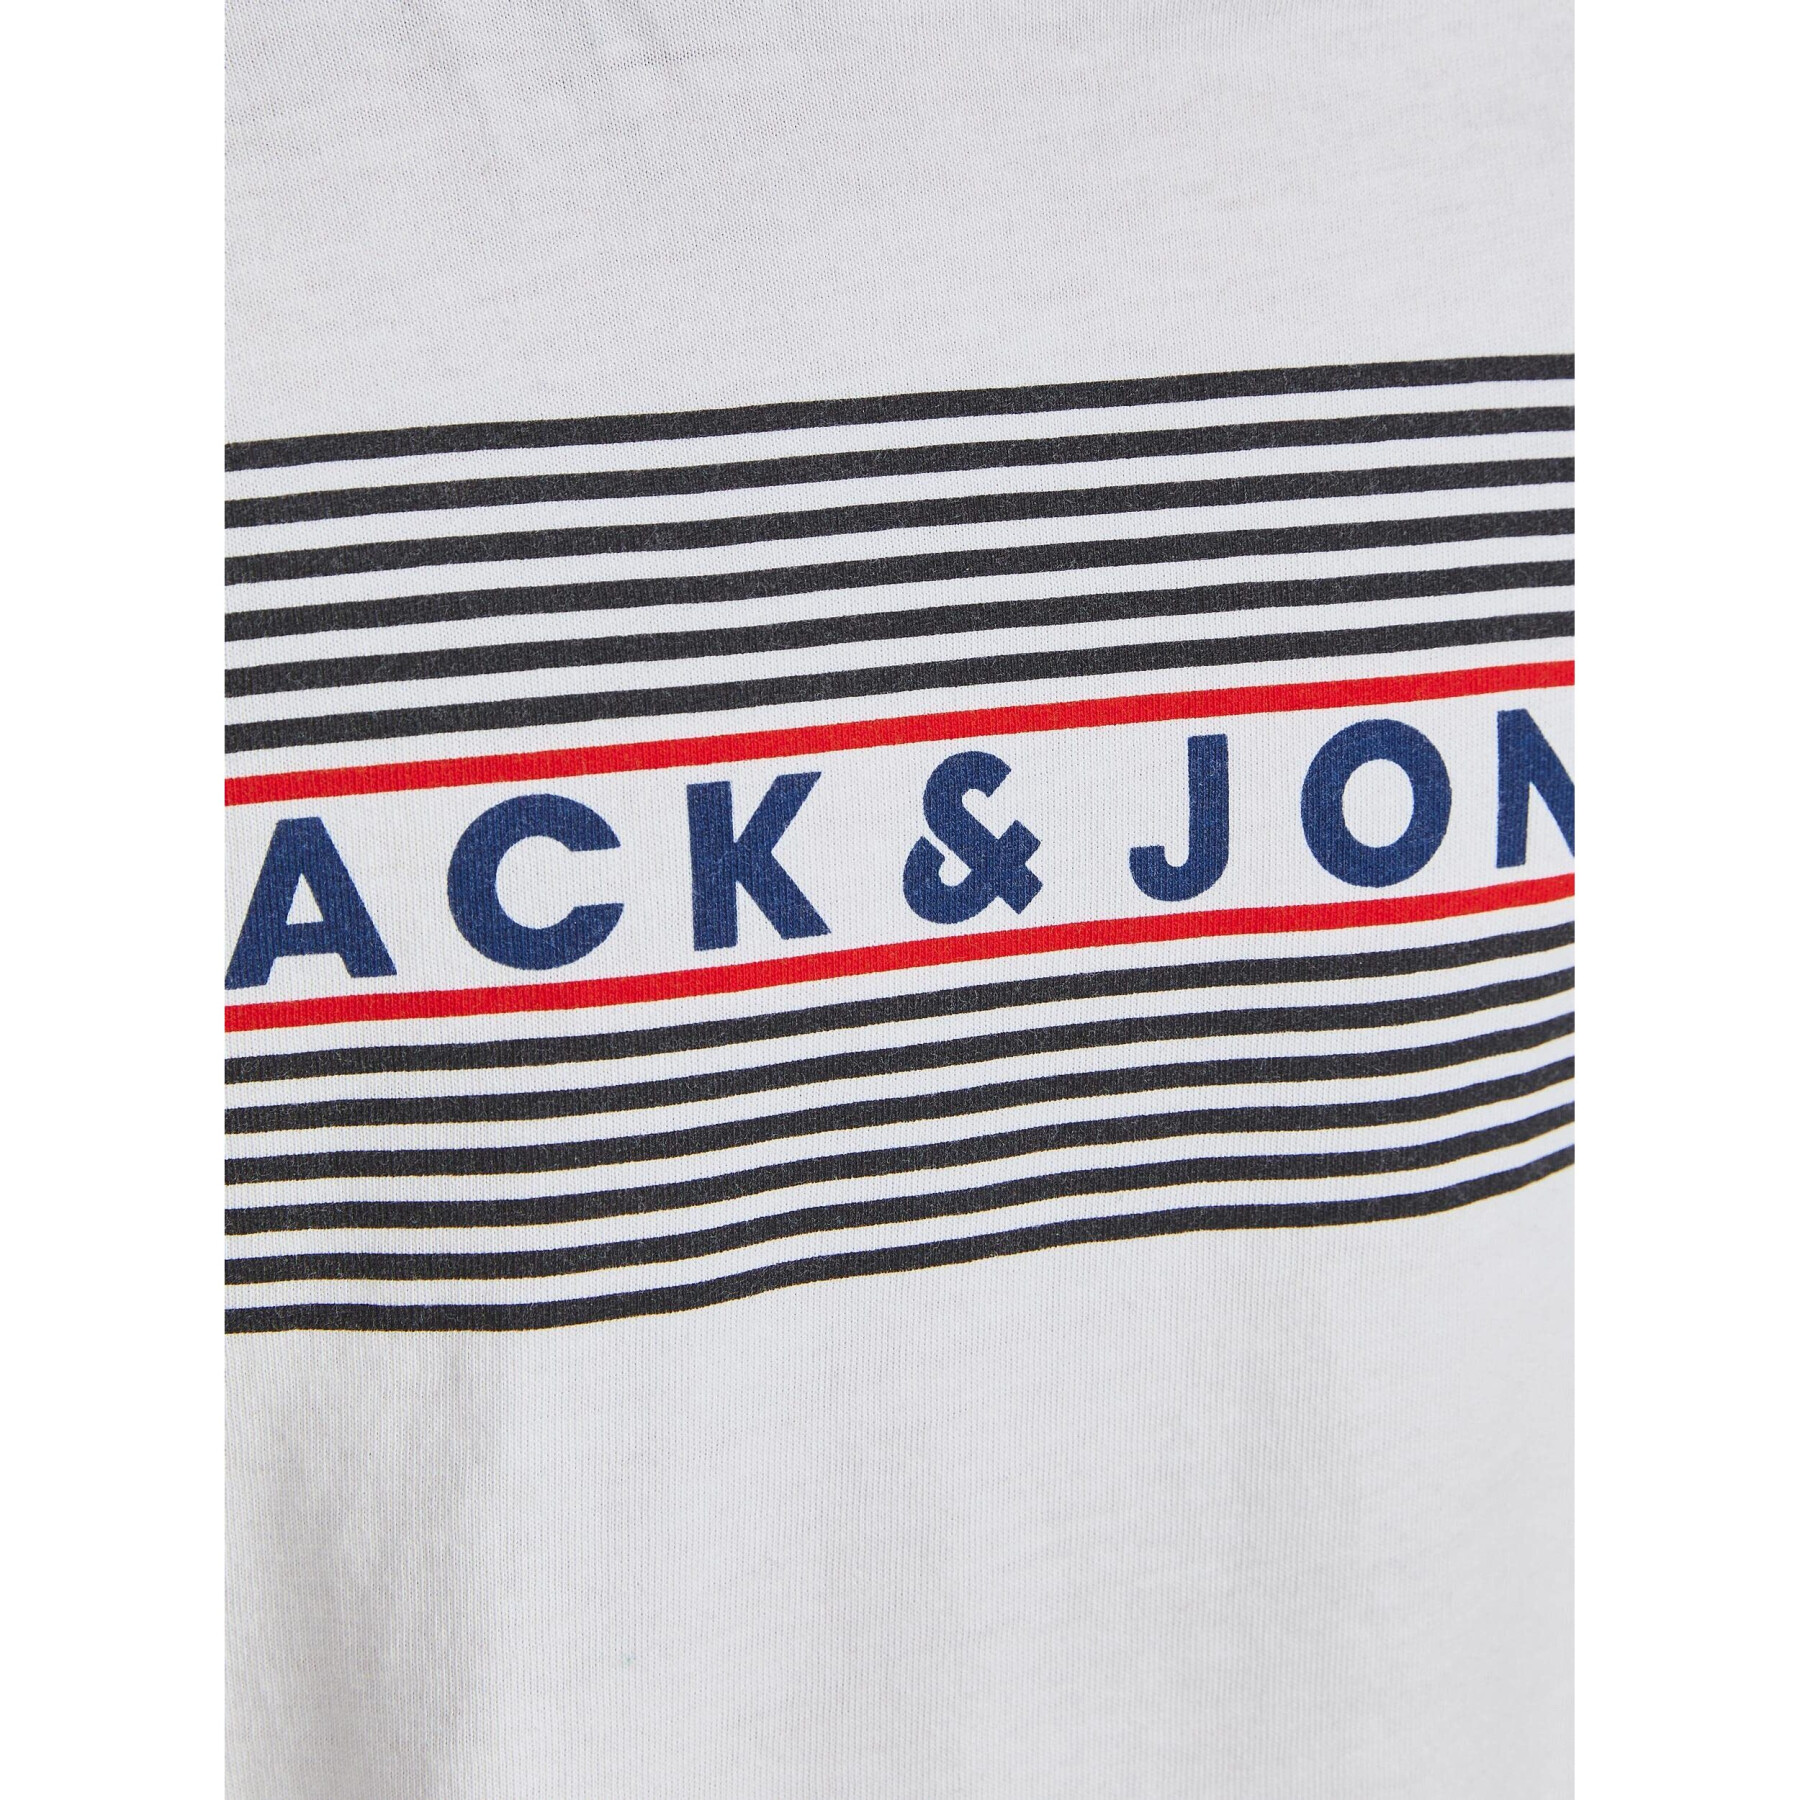 T-shirt de criança Jack & Jones corp logo